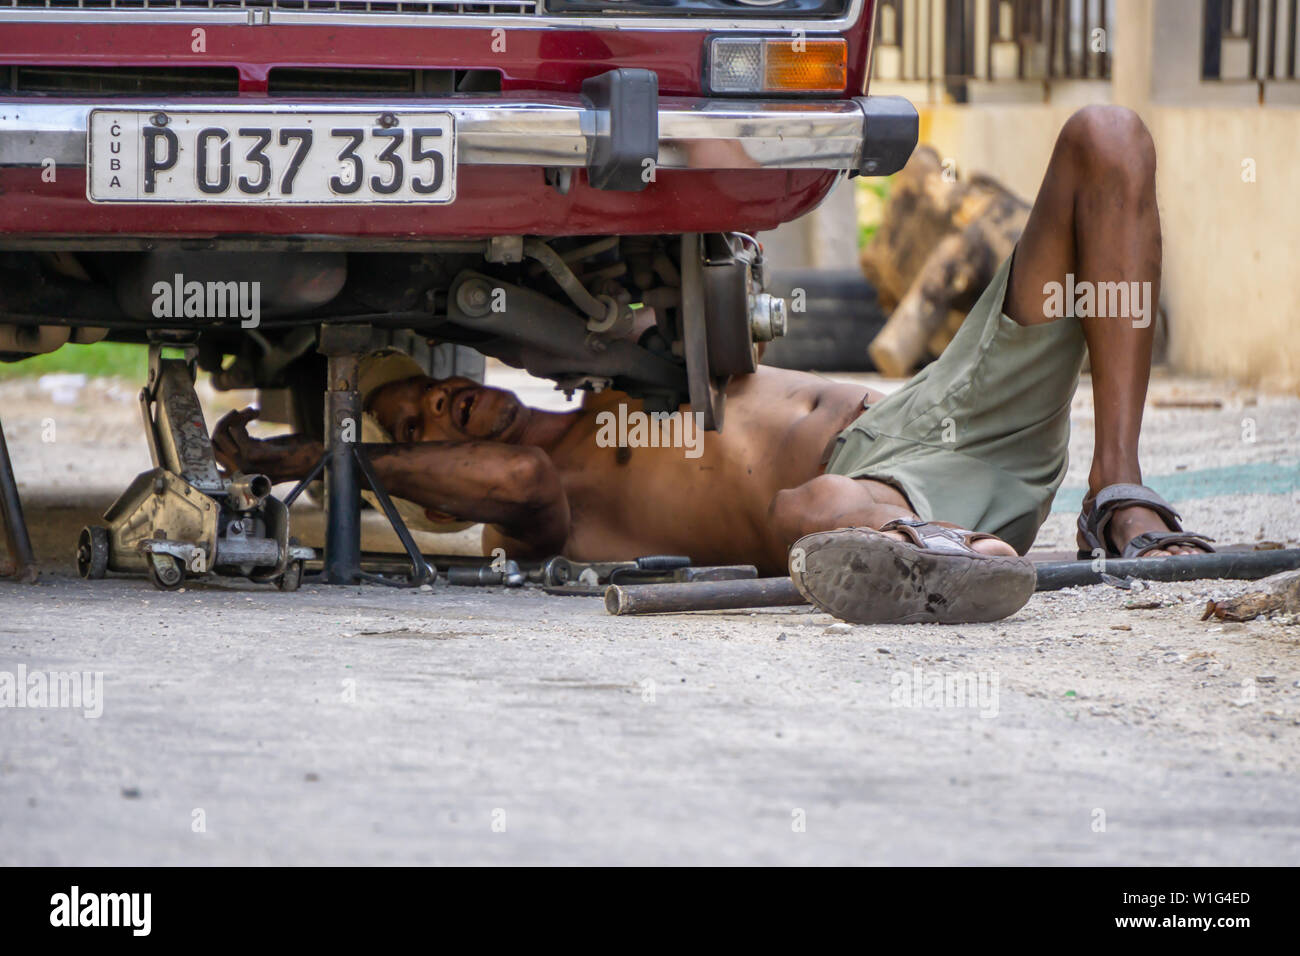 L'Avana, Cuba - Maggio 17, 2019: Sporco auto cubano meccanico è lavorare sotto il veicolo per le strade della vecchia Havana City durante una calda giornata di sole. Foto Stock